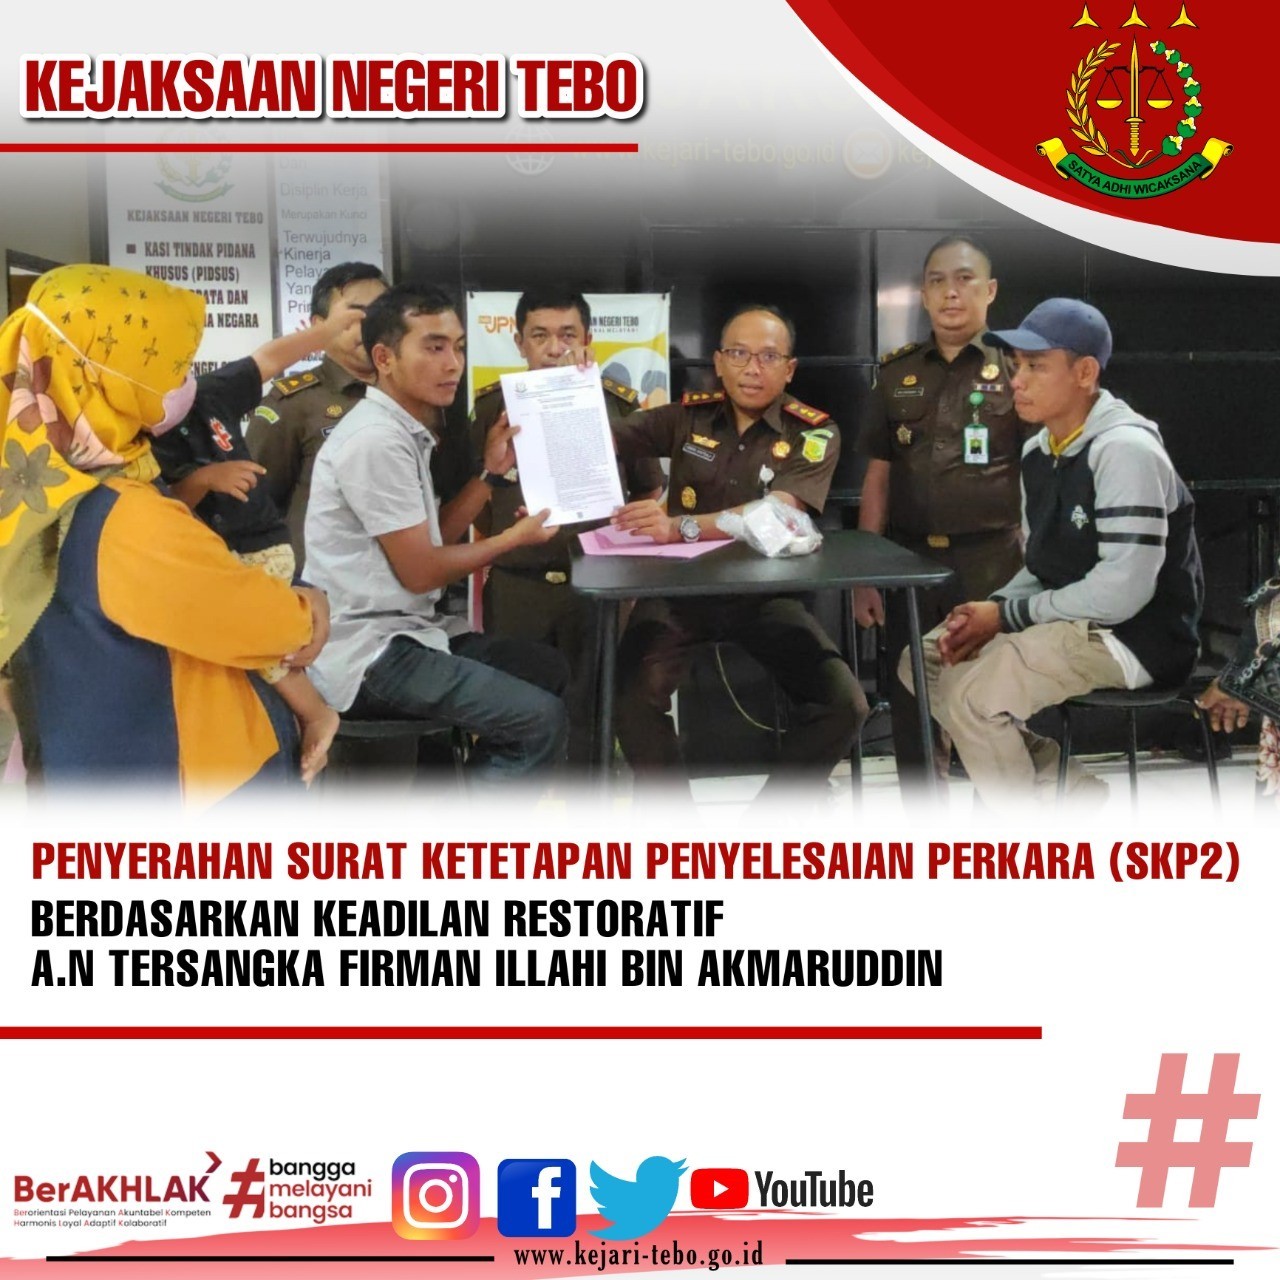 Penyerahan Surat Ketetapan Penyelesaian Perkara (SKP2) berdasarkan keadilan restoratif An. tersangka Firman Illahi Bin Akmaruddin.